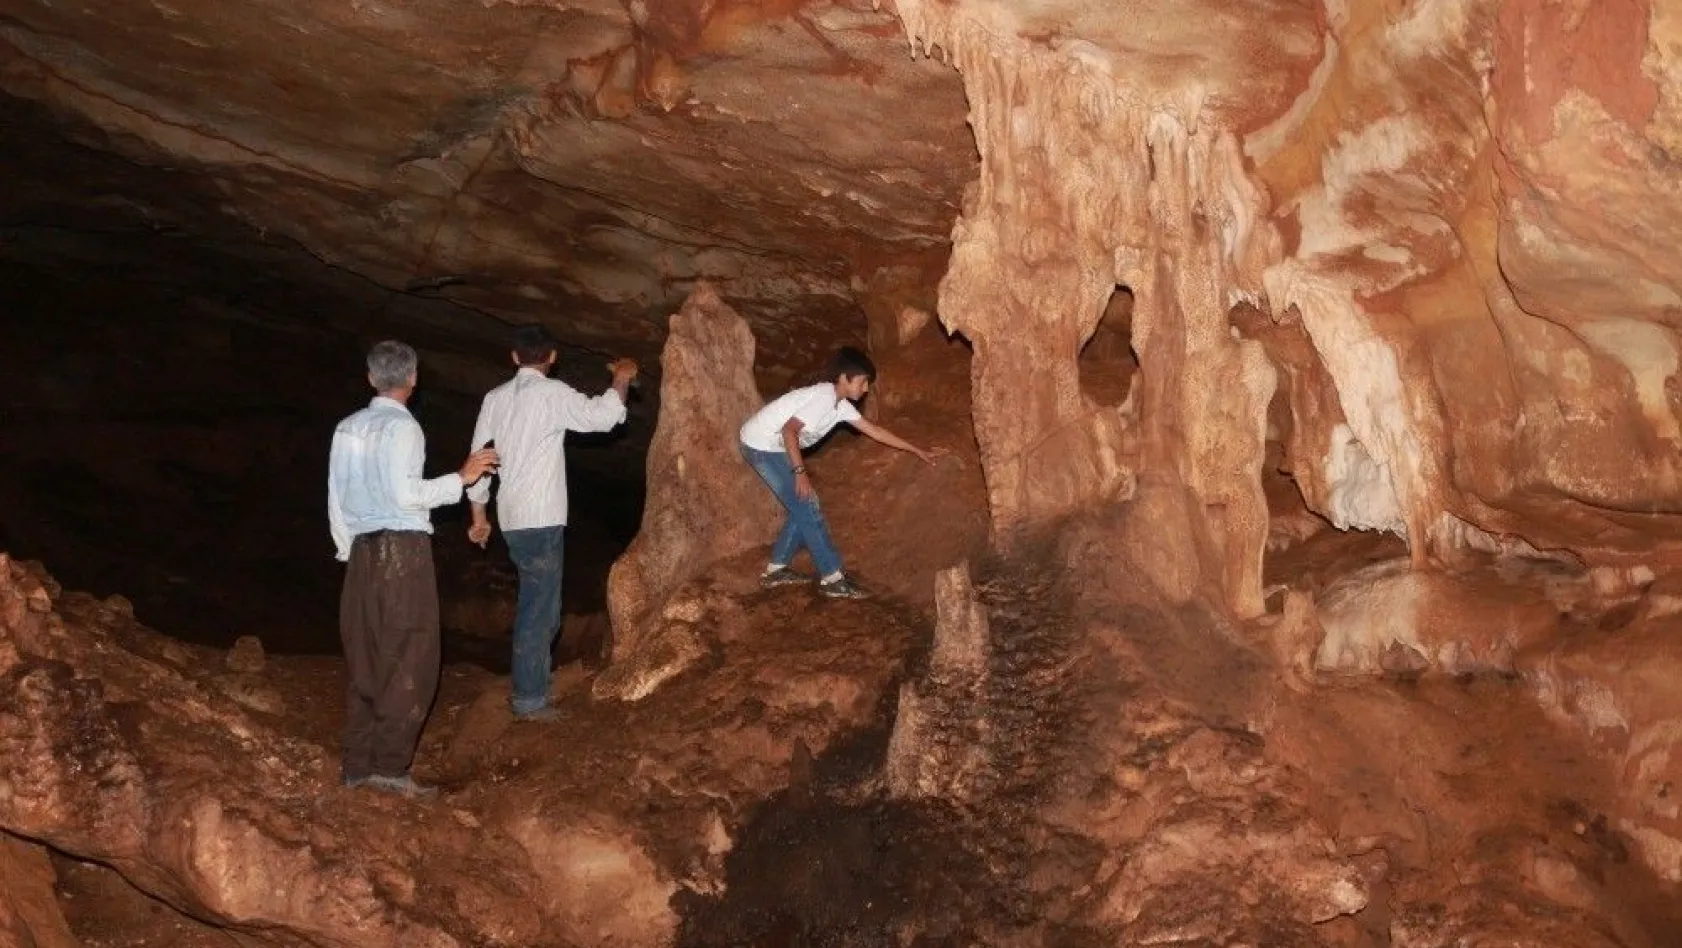 (Özel) 3 arkadaş yarasa mağarasını keşfetti
